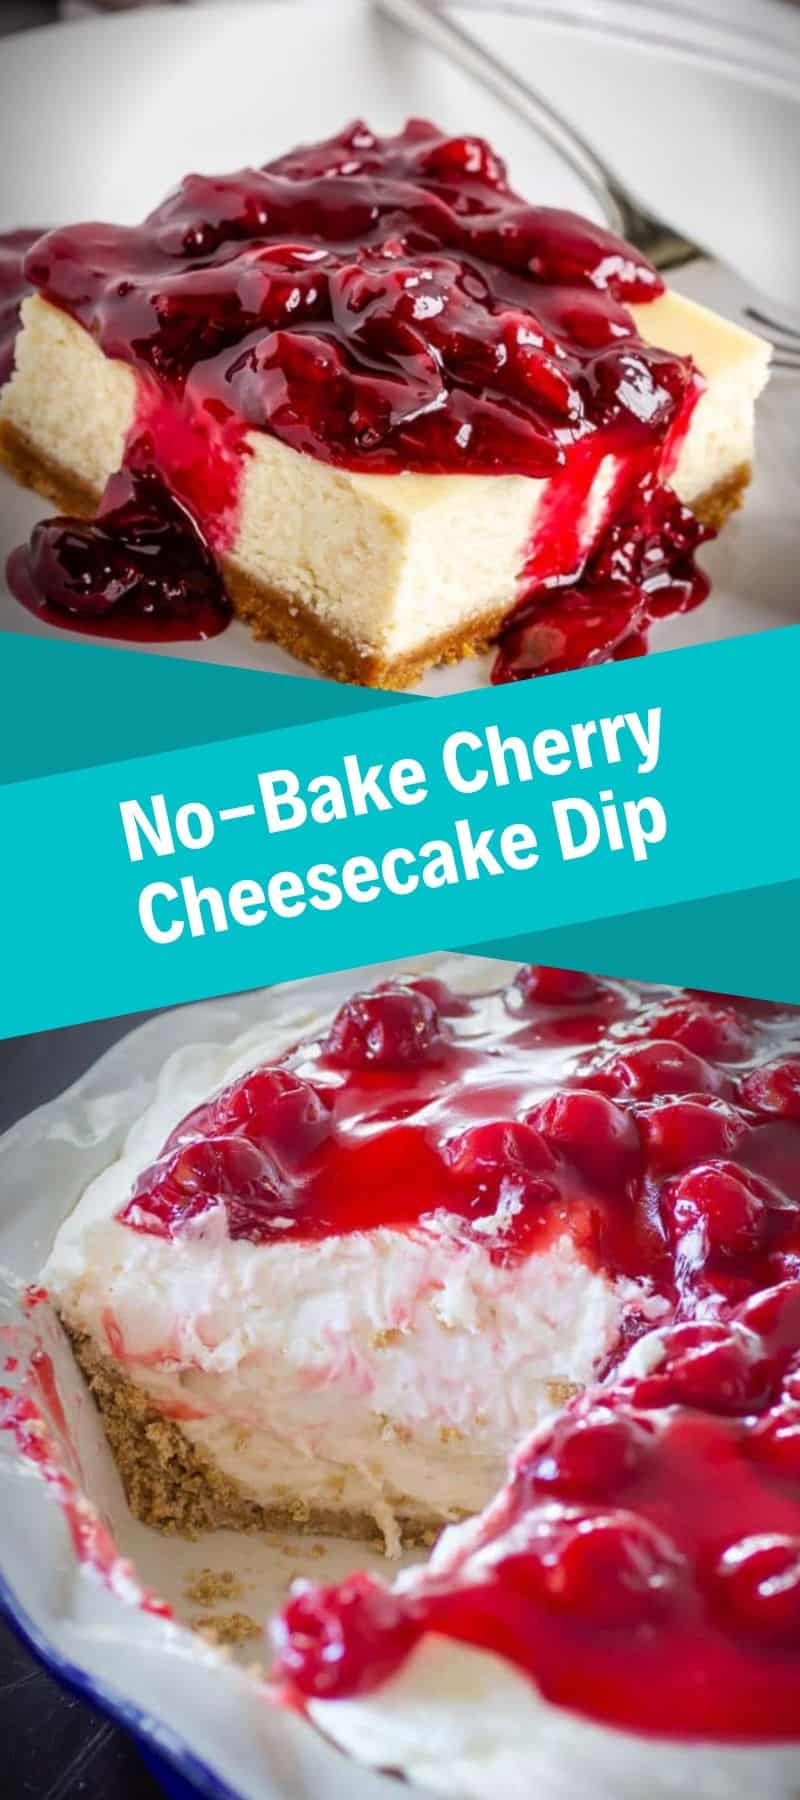 No-Bake Cherry Cheesecake Dip Recipe 2